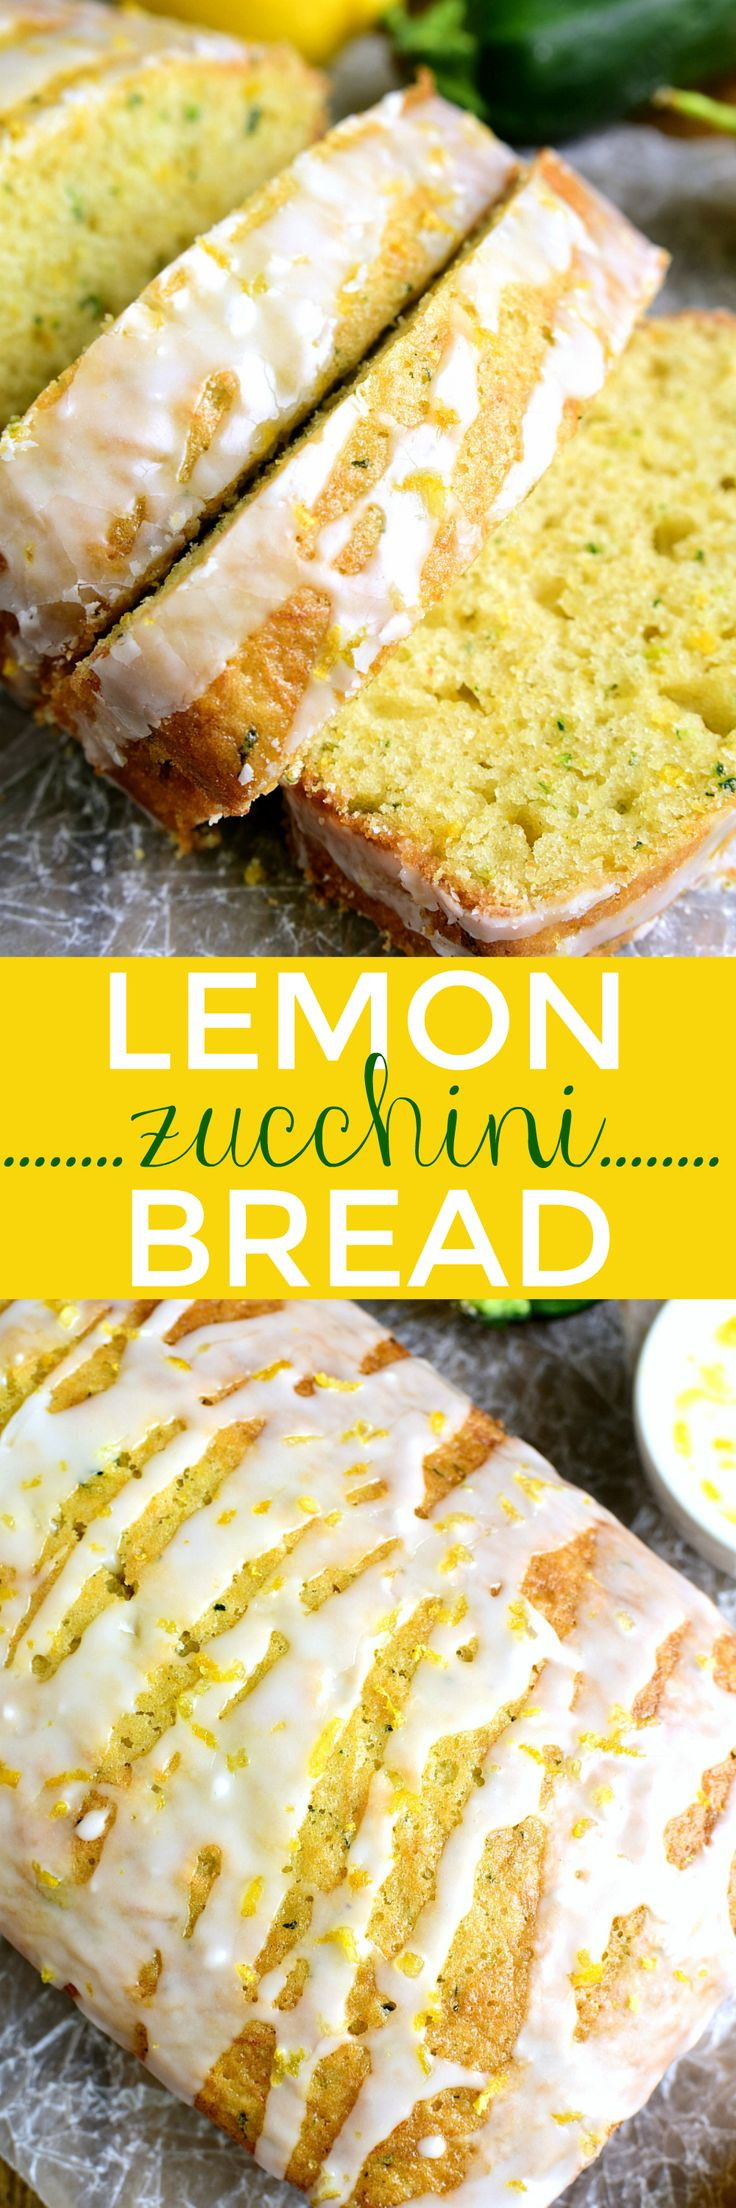 Healthy Lemon Bread Recipe
 25 best ideas about Lemon zucchini bread on Pinterest